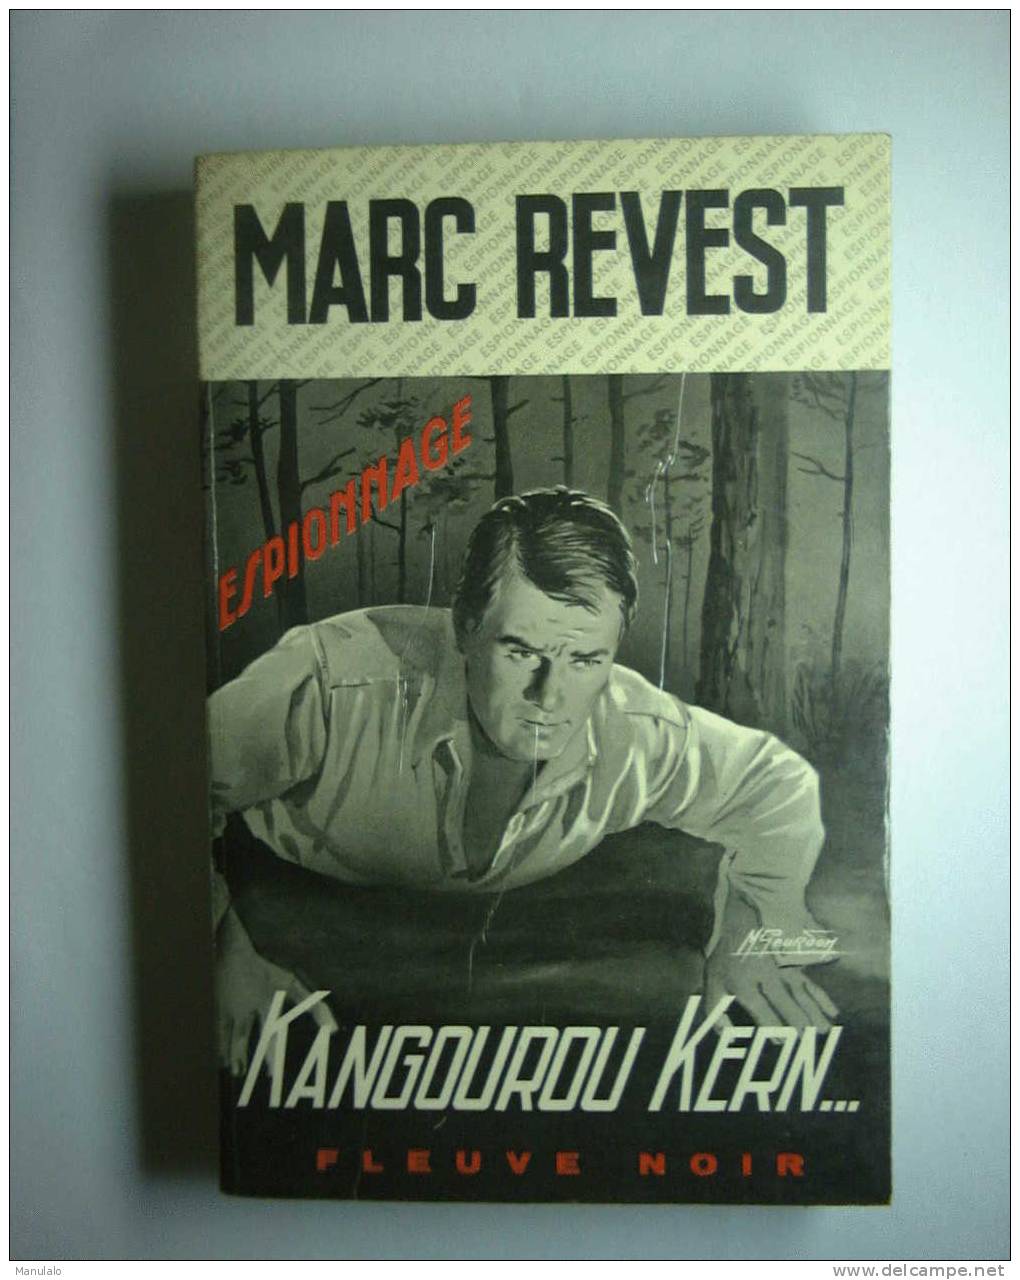 Livre Fleuve Noir Espionnage De Marc Revest  " Kangourou Kern... " N°955 - Fleuve Noir